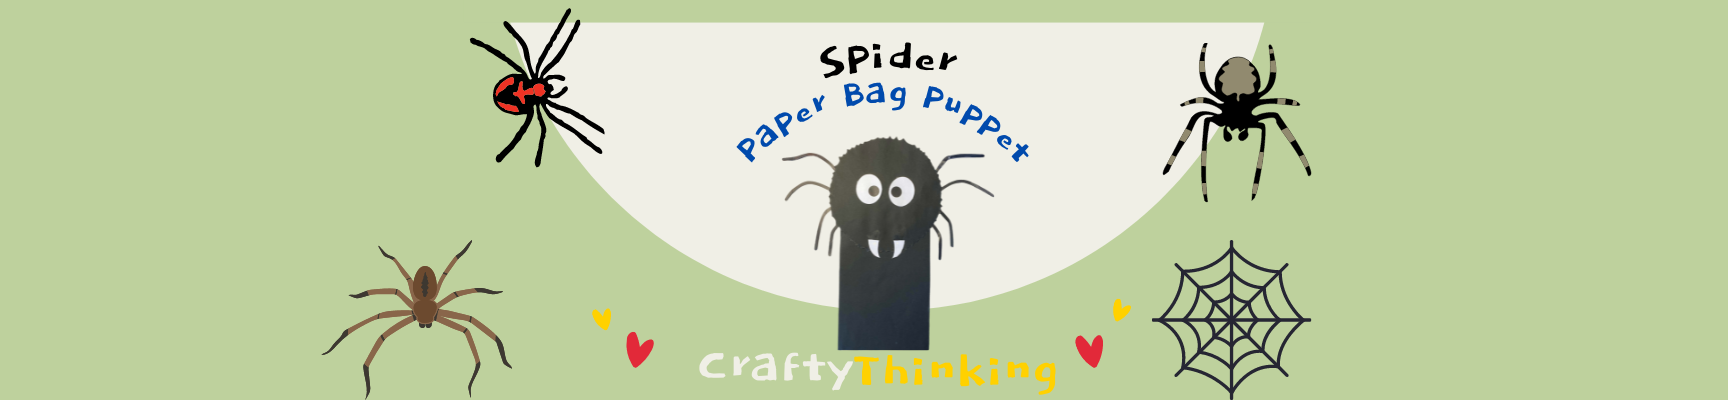 Spider crafts